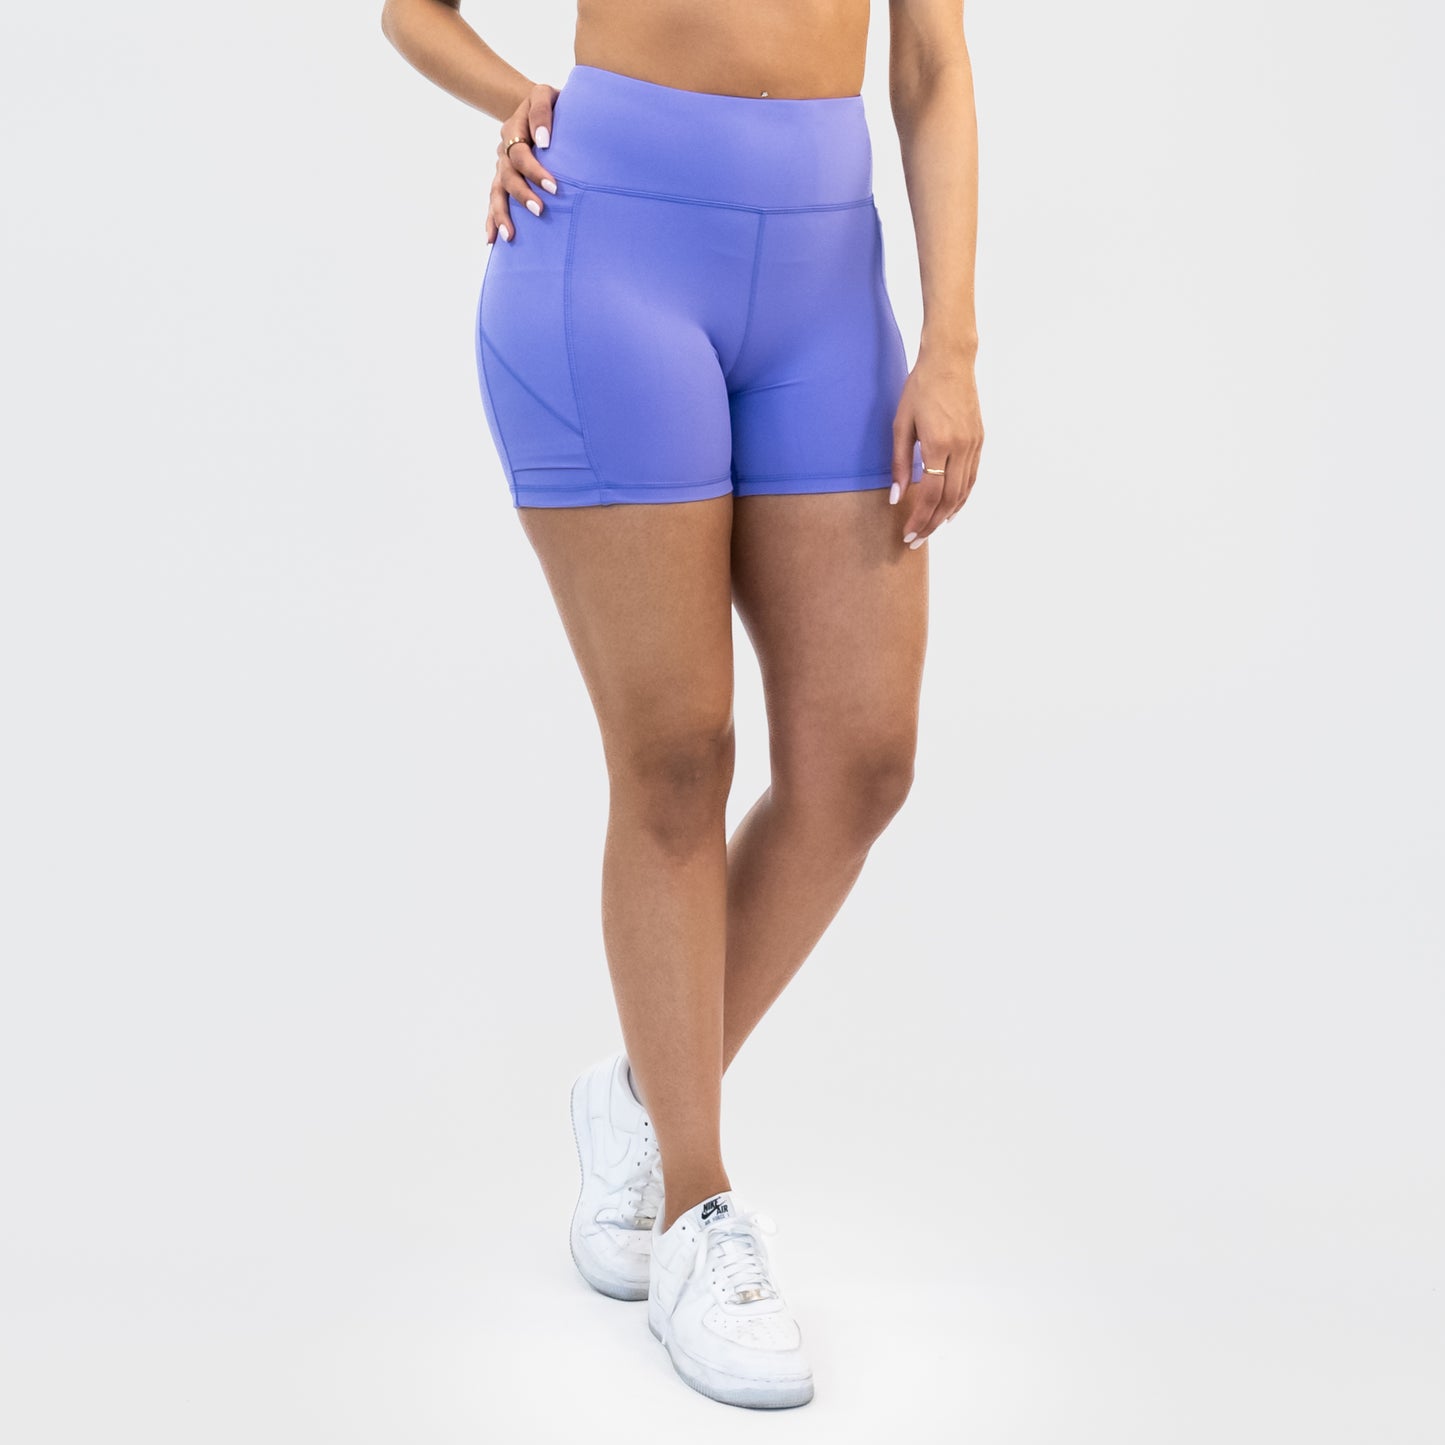 Lux Baseline Shorts (5 in. inseam) - Iris - FINAL SALE